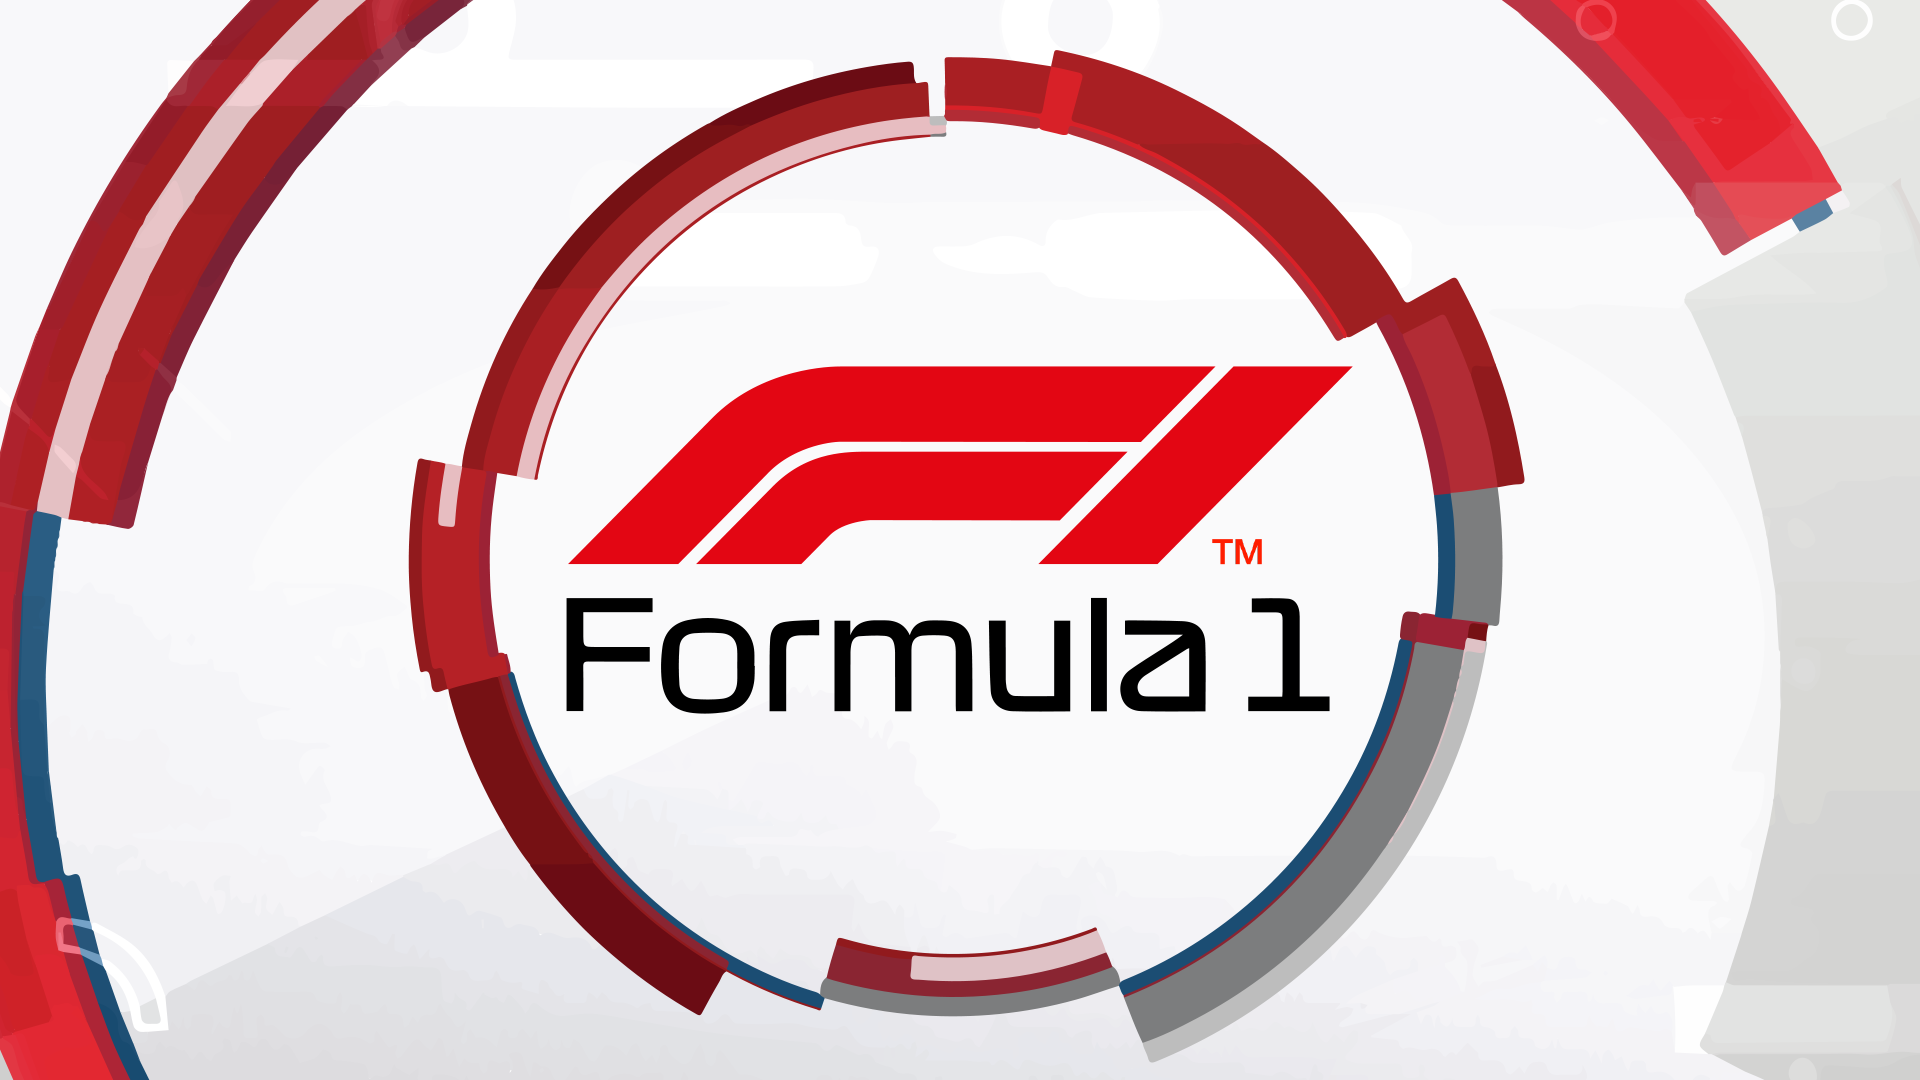 Formel 1: Miami GP: Qualifying - Pitlane Channel